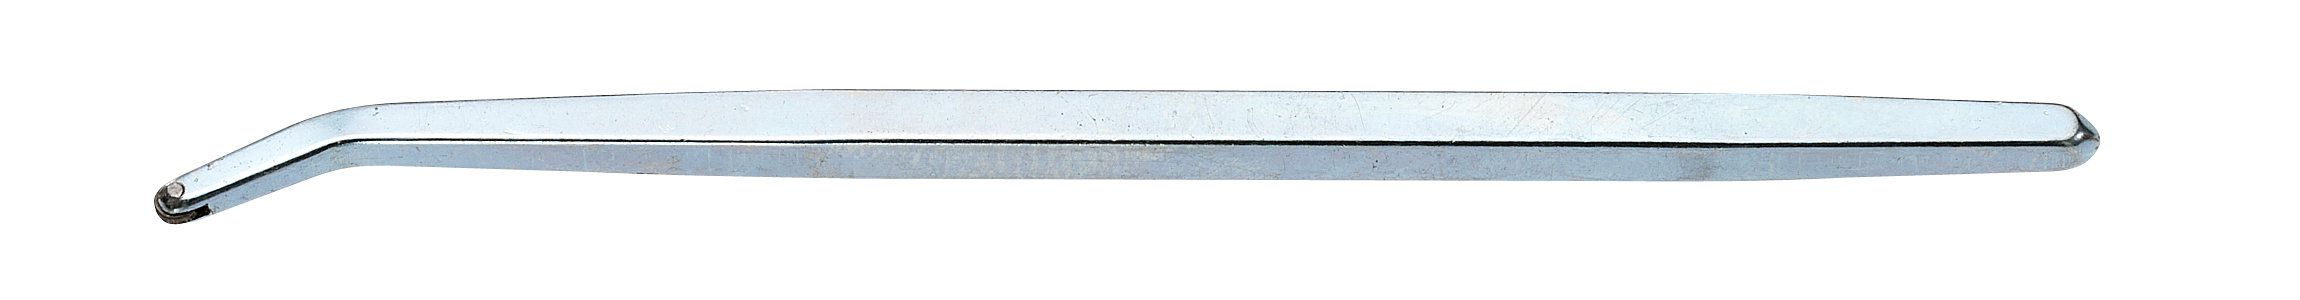 Millgrain tool Type 6 medium